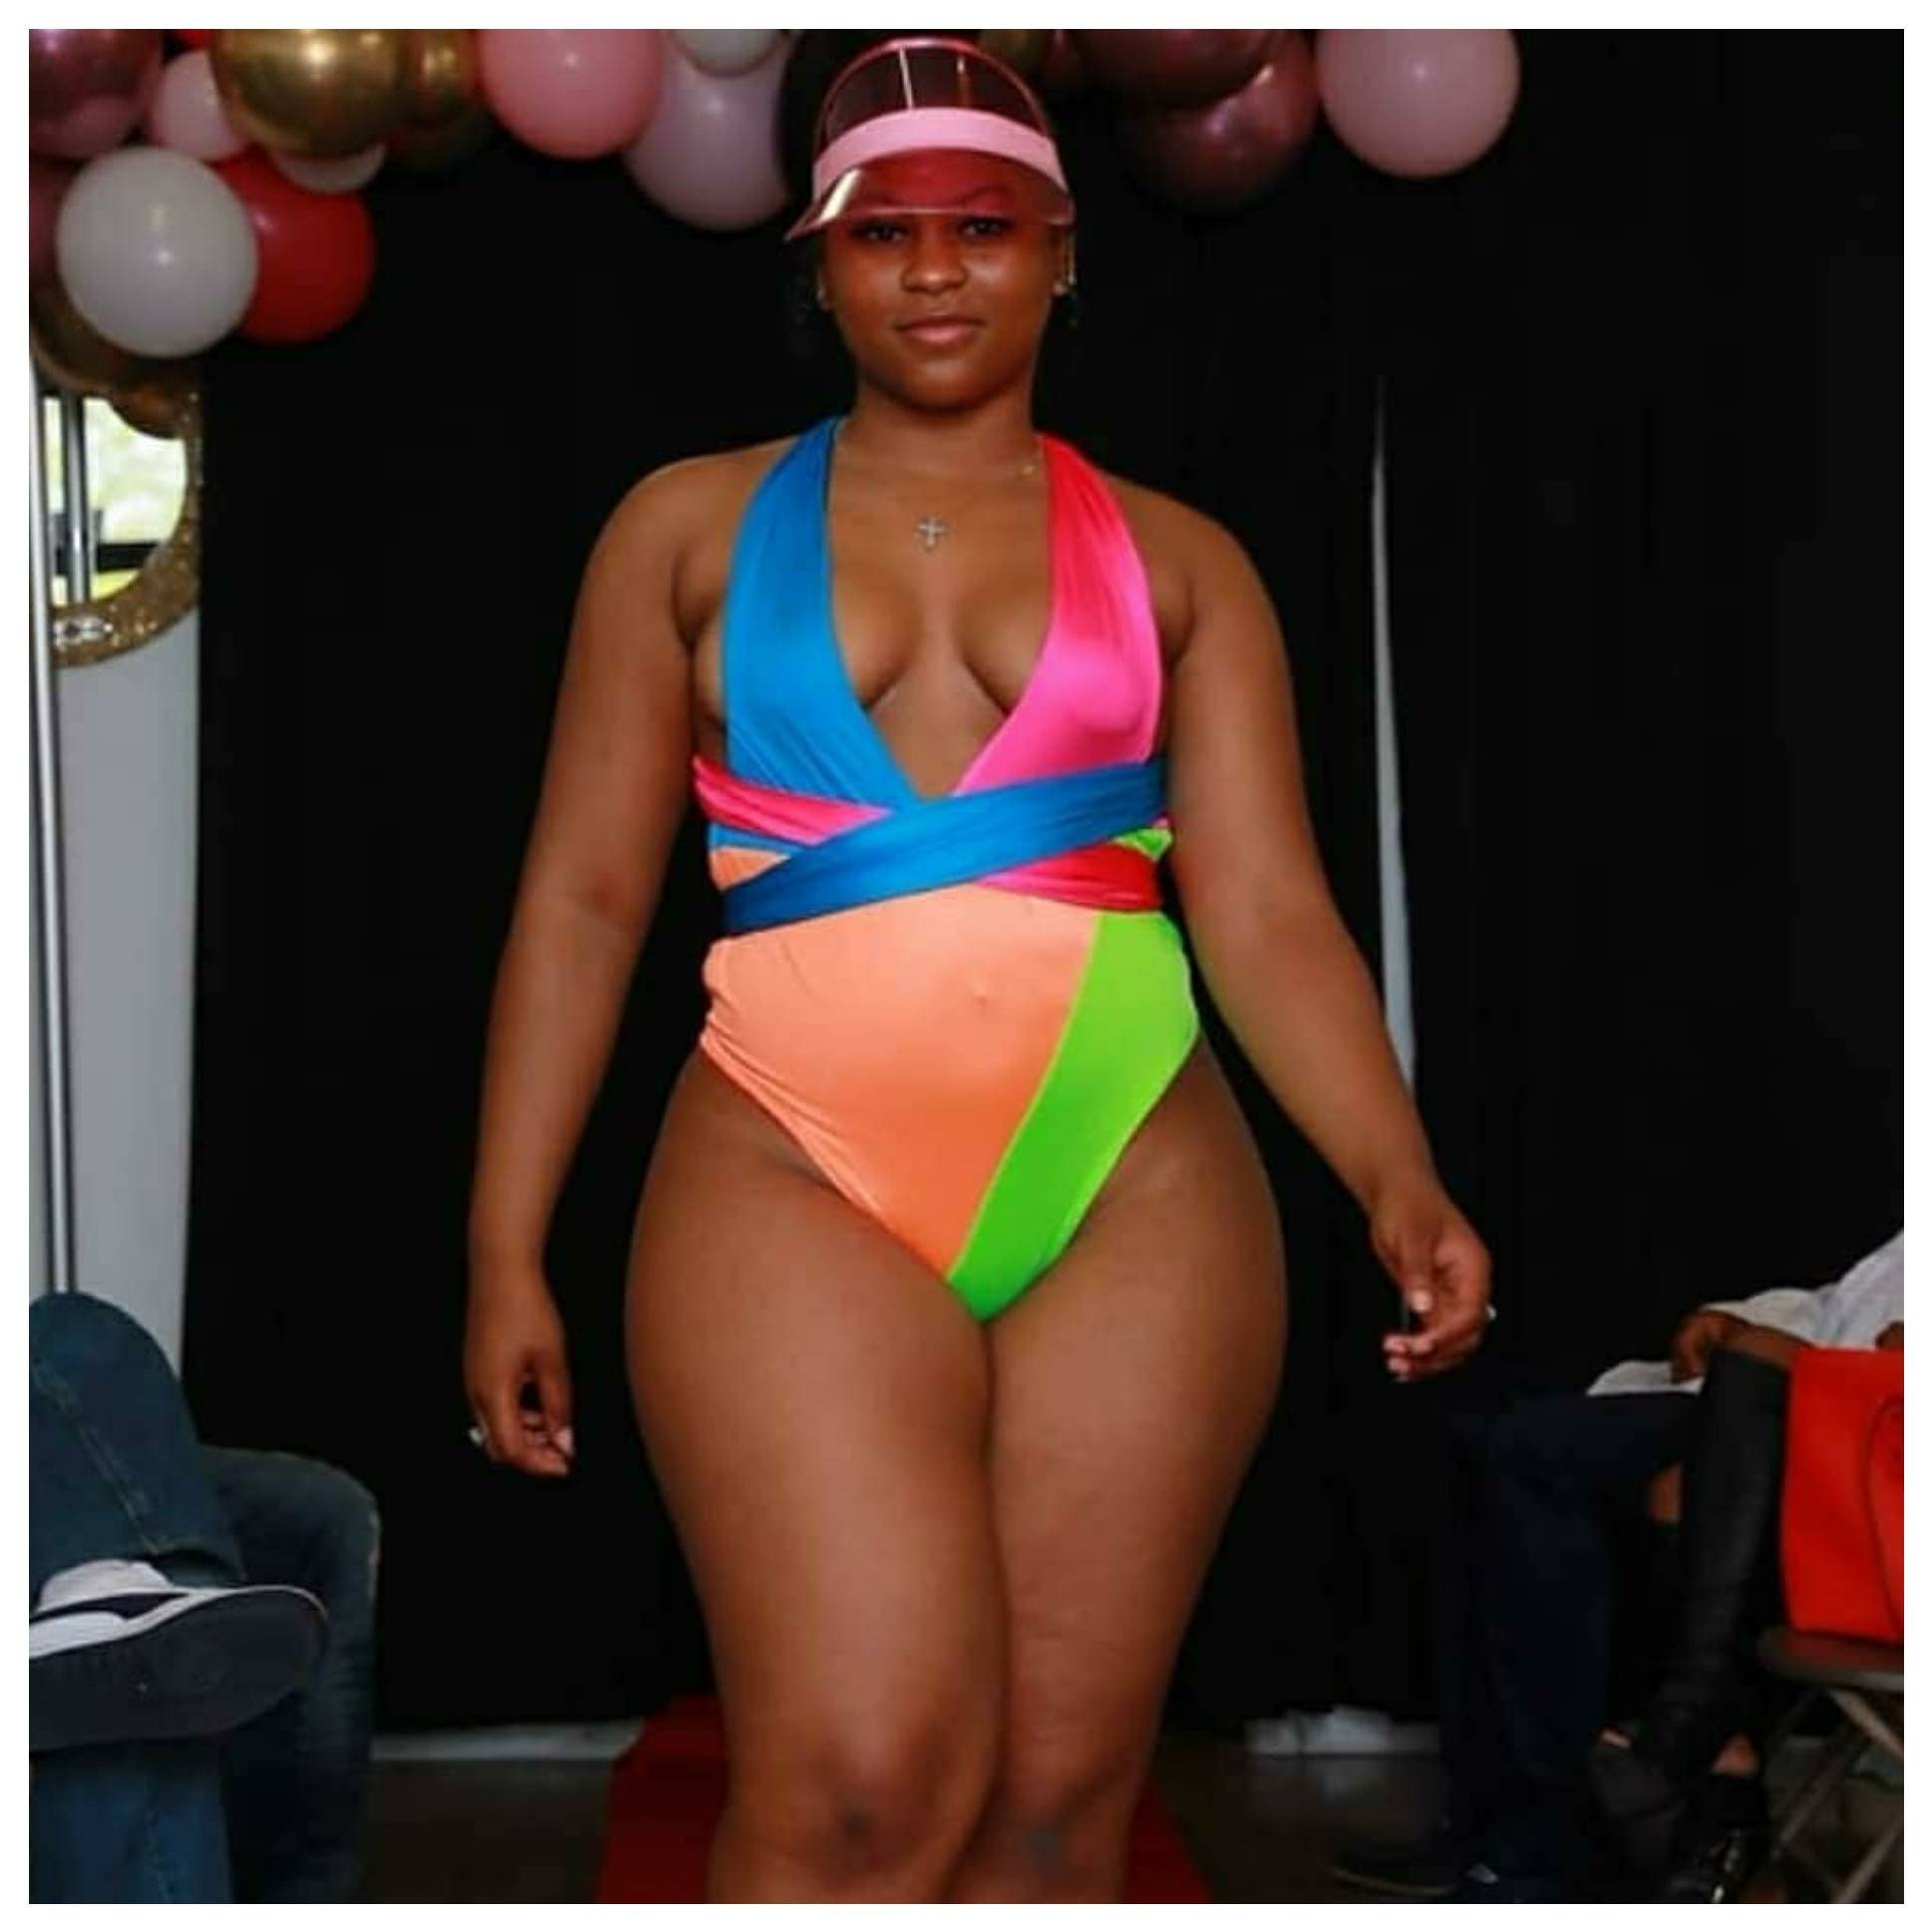 Neon Delight Plus Size Swimsuit, Infinity Swimsuit, Wrap Swimsuit, Neon  Colors, Bright Colors, Sizes S,m,l,xl,2x,3x,4x 